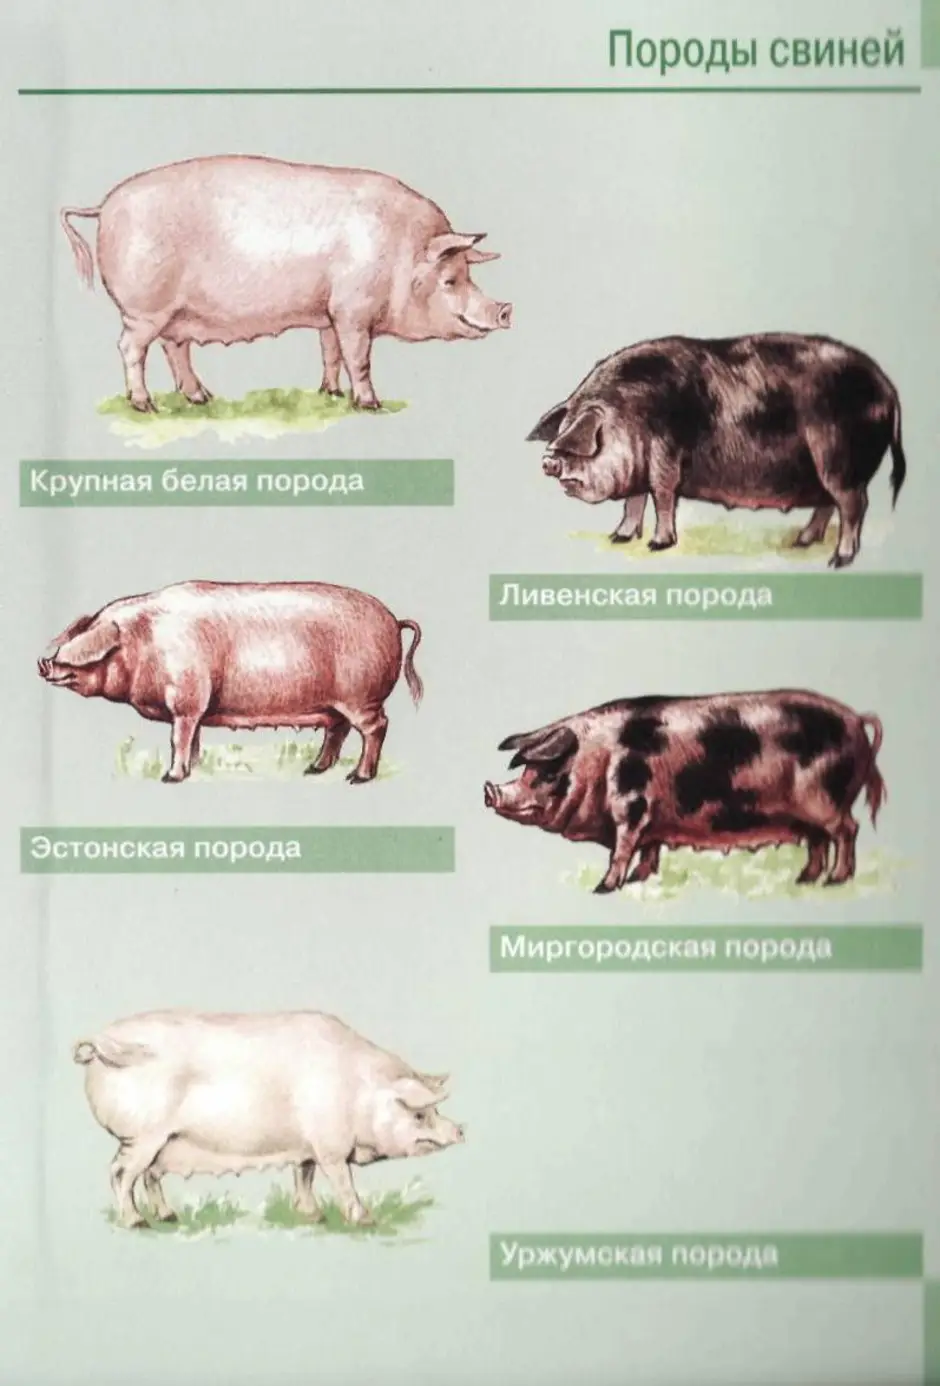 Какие виды свиней. Боргояковская порода свиней. Породы свиней мясного направления. Порода свиней Рослик. Породы свиней сального направления продуктивности.